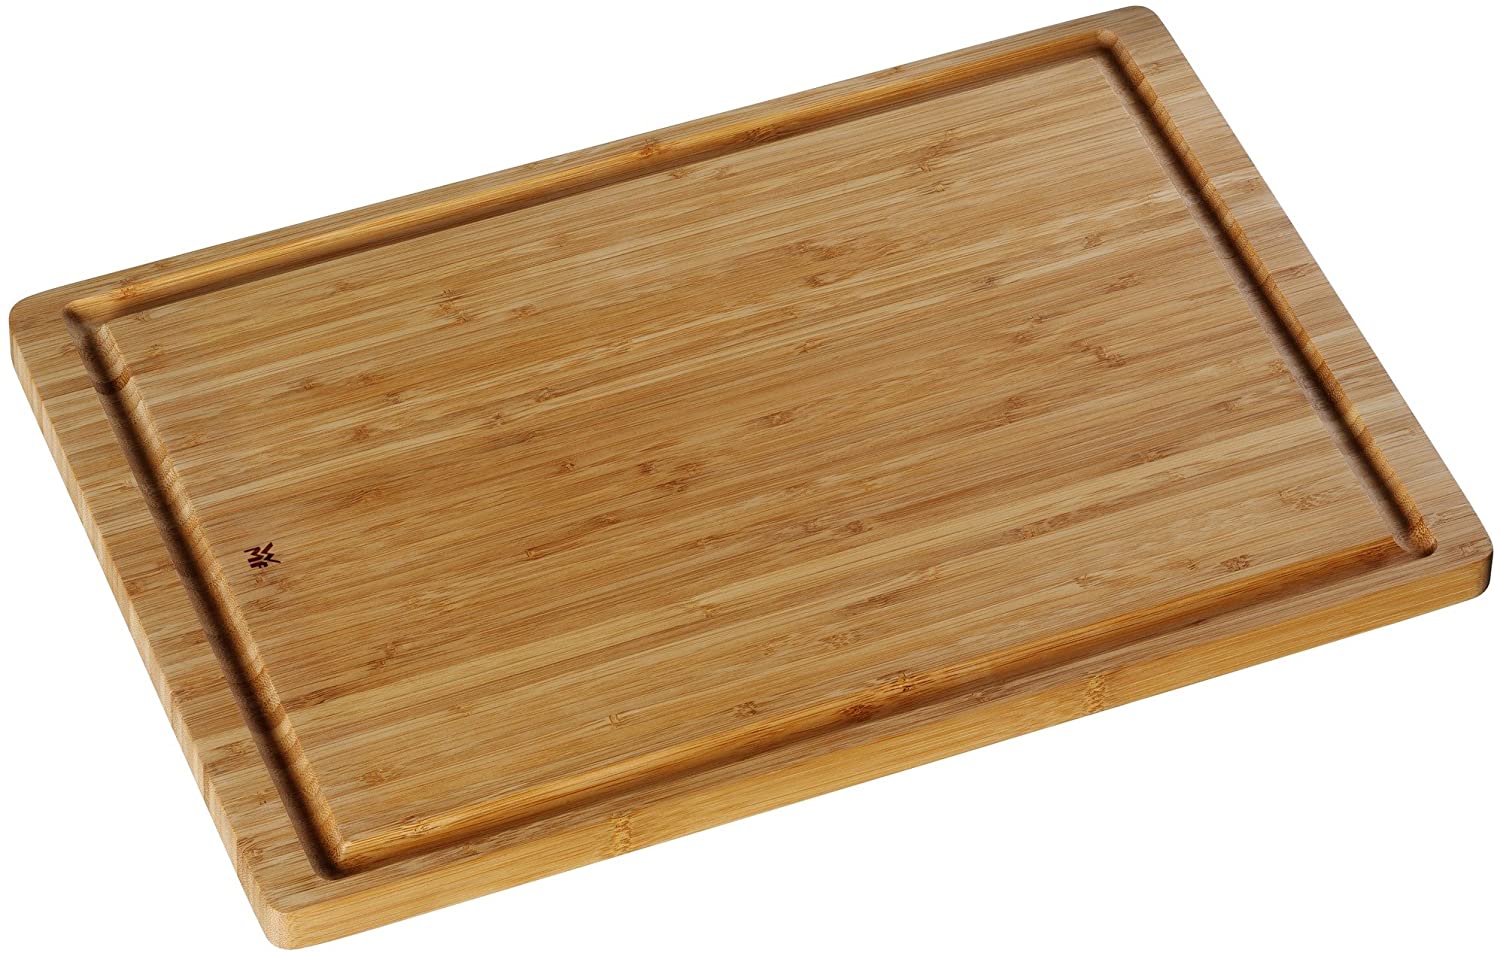 WMF Bread Knife Chopping Board, 30x45 cm